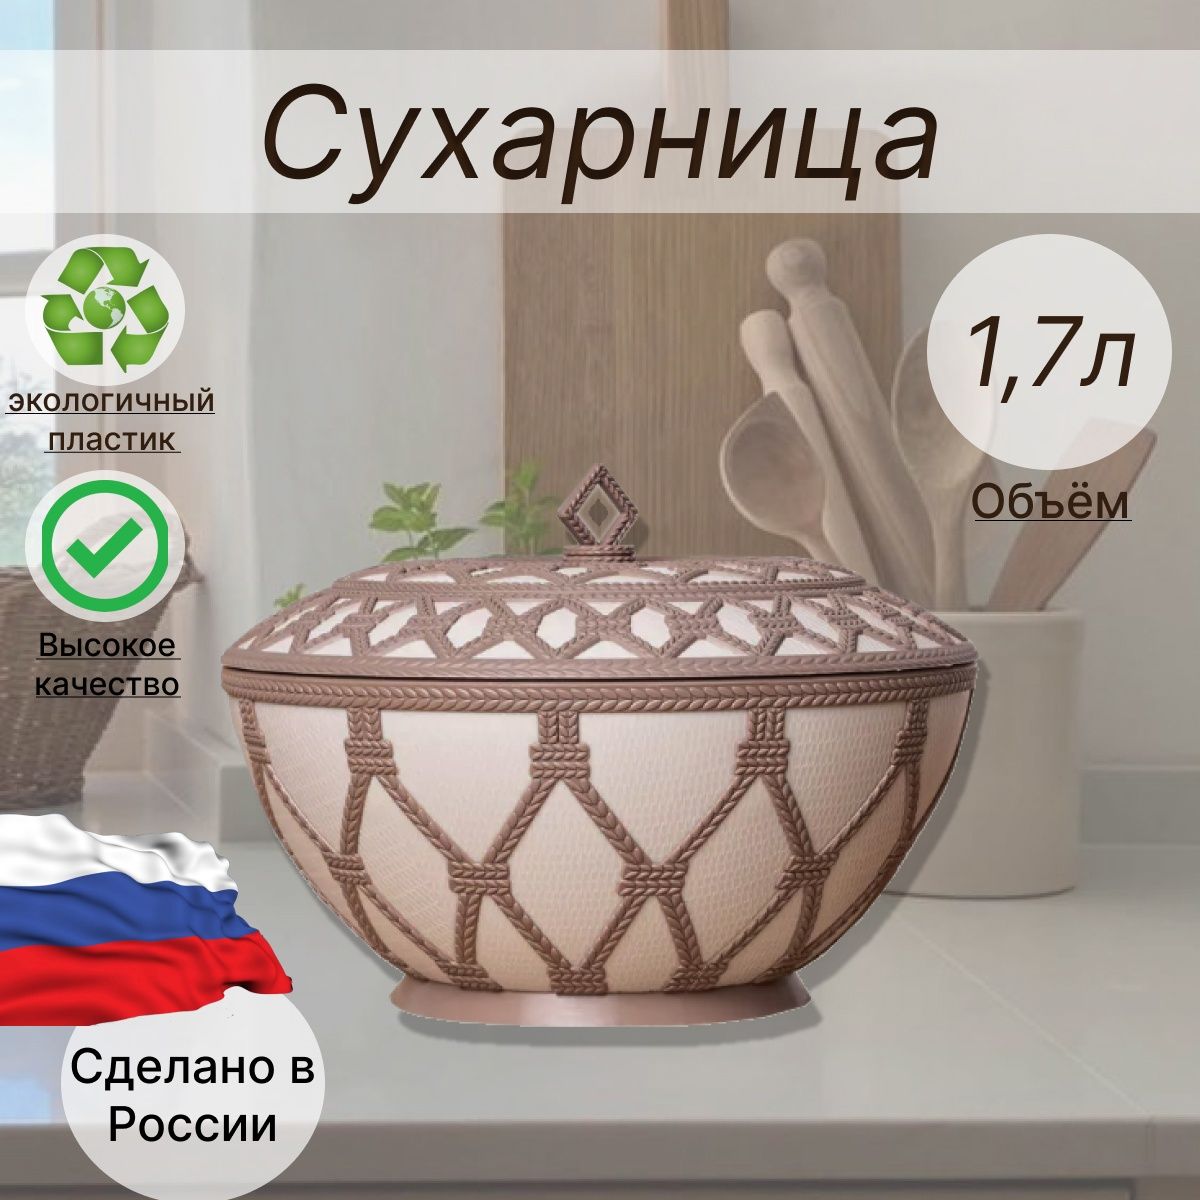 Корзинки из печенья Хлебпром с мягким творогом - рецепты от интернет-магазина Хлебпром